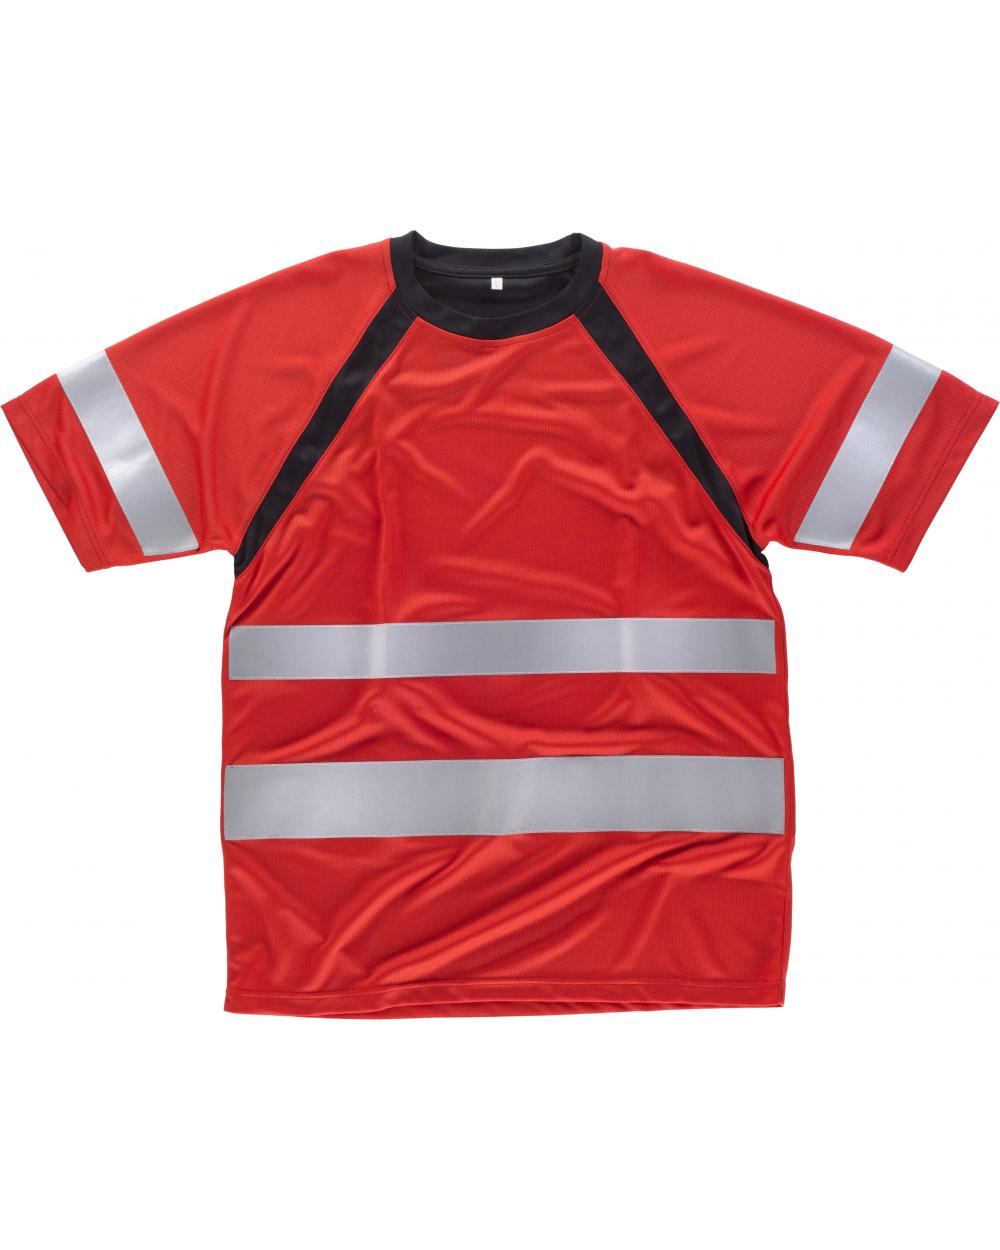 Comprar Camiseta tejido transpirable C2940 Rojo+Negro workteam delante